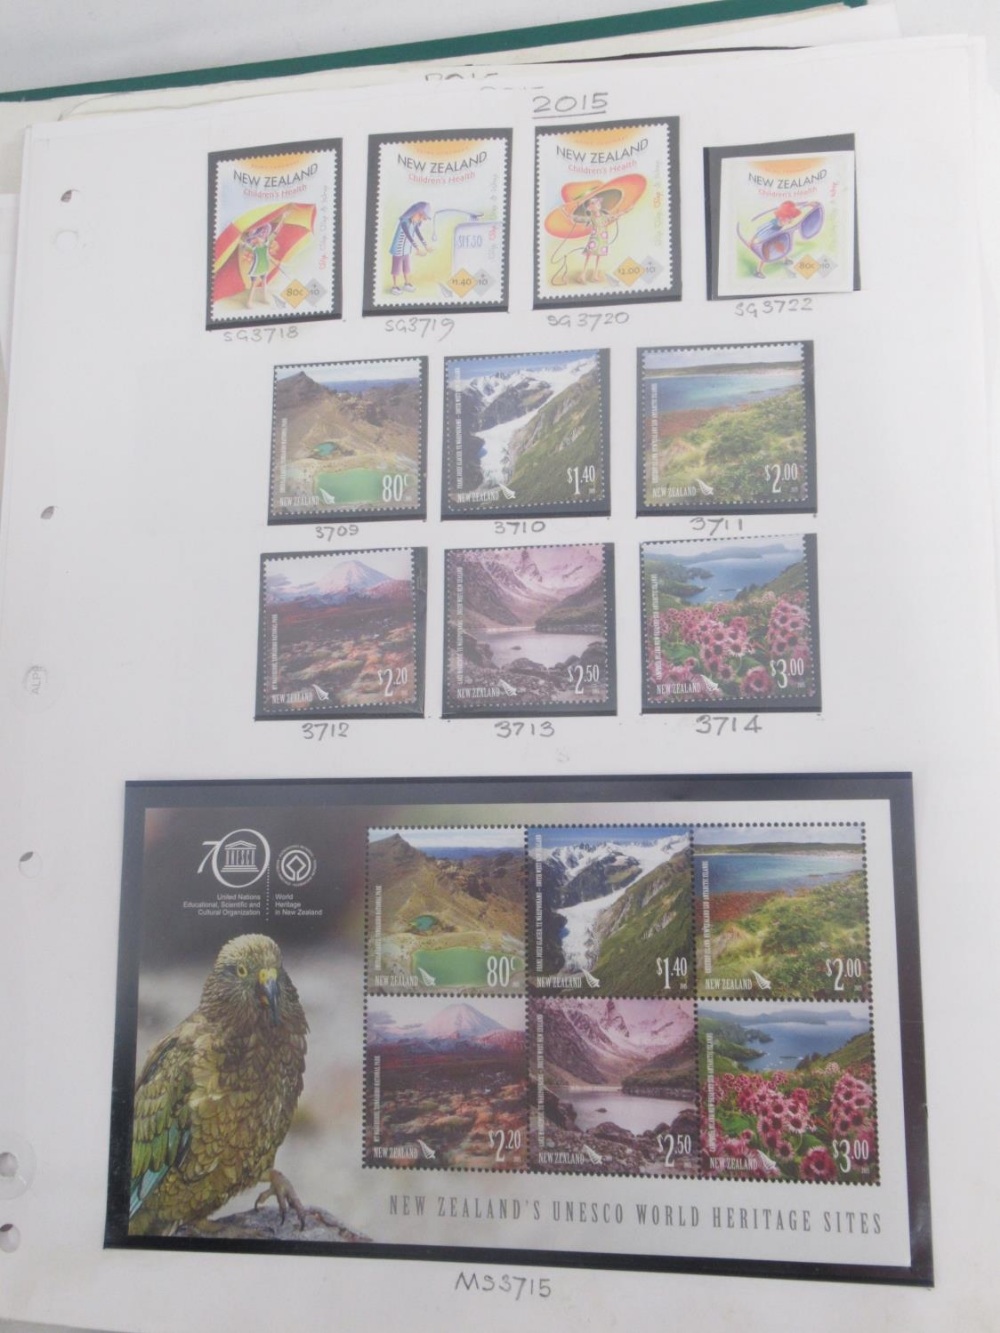 New Zealand stamps - Viscount Stamp Album cont. 2013-2018 NZ stamps, Viscount Stamp Album cont. - Image 3 of 8